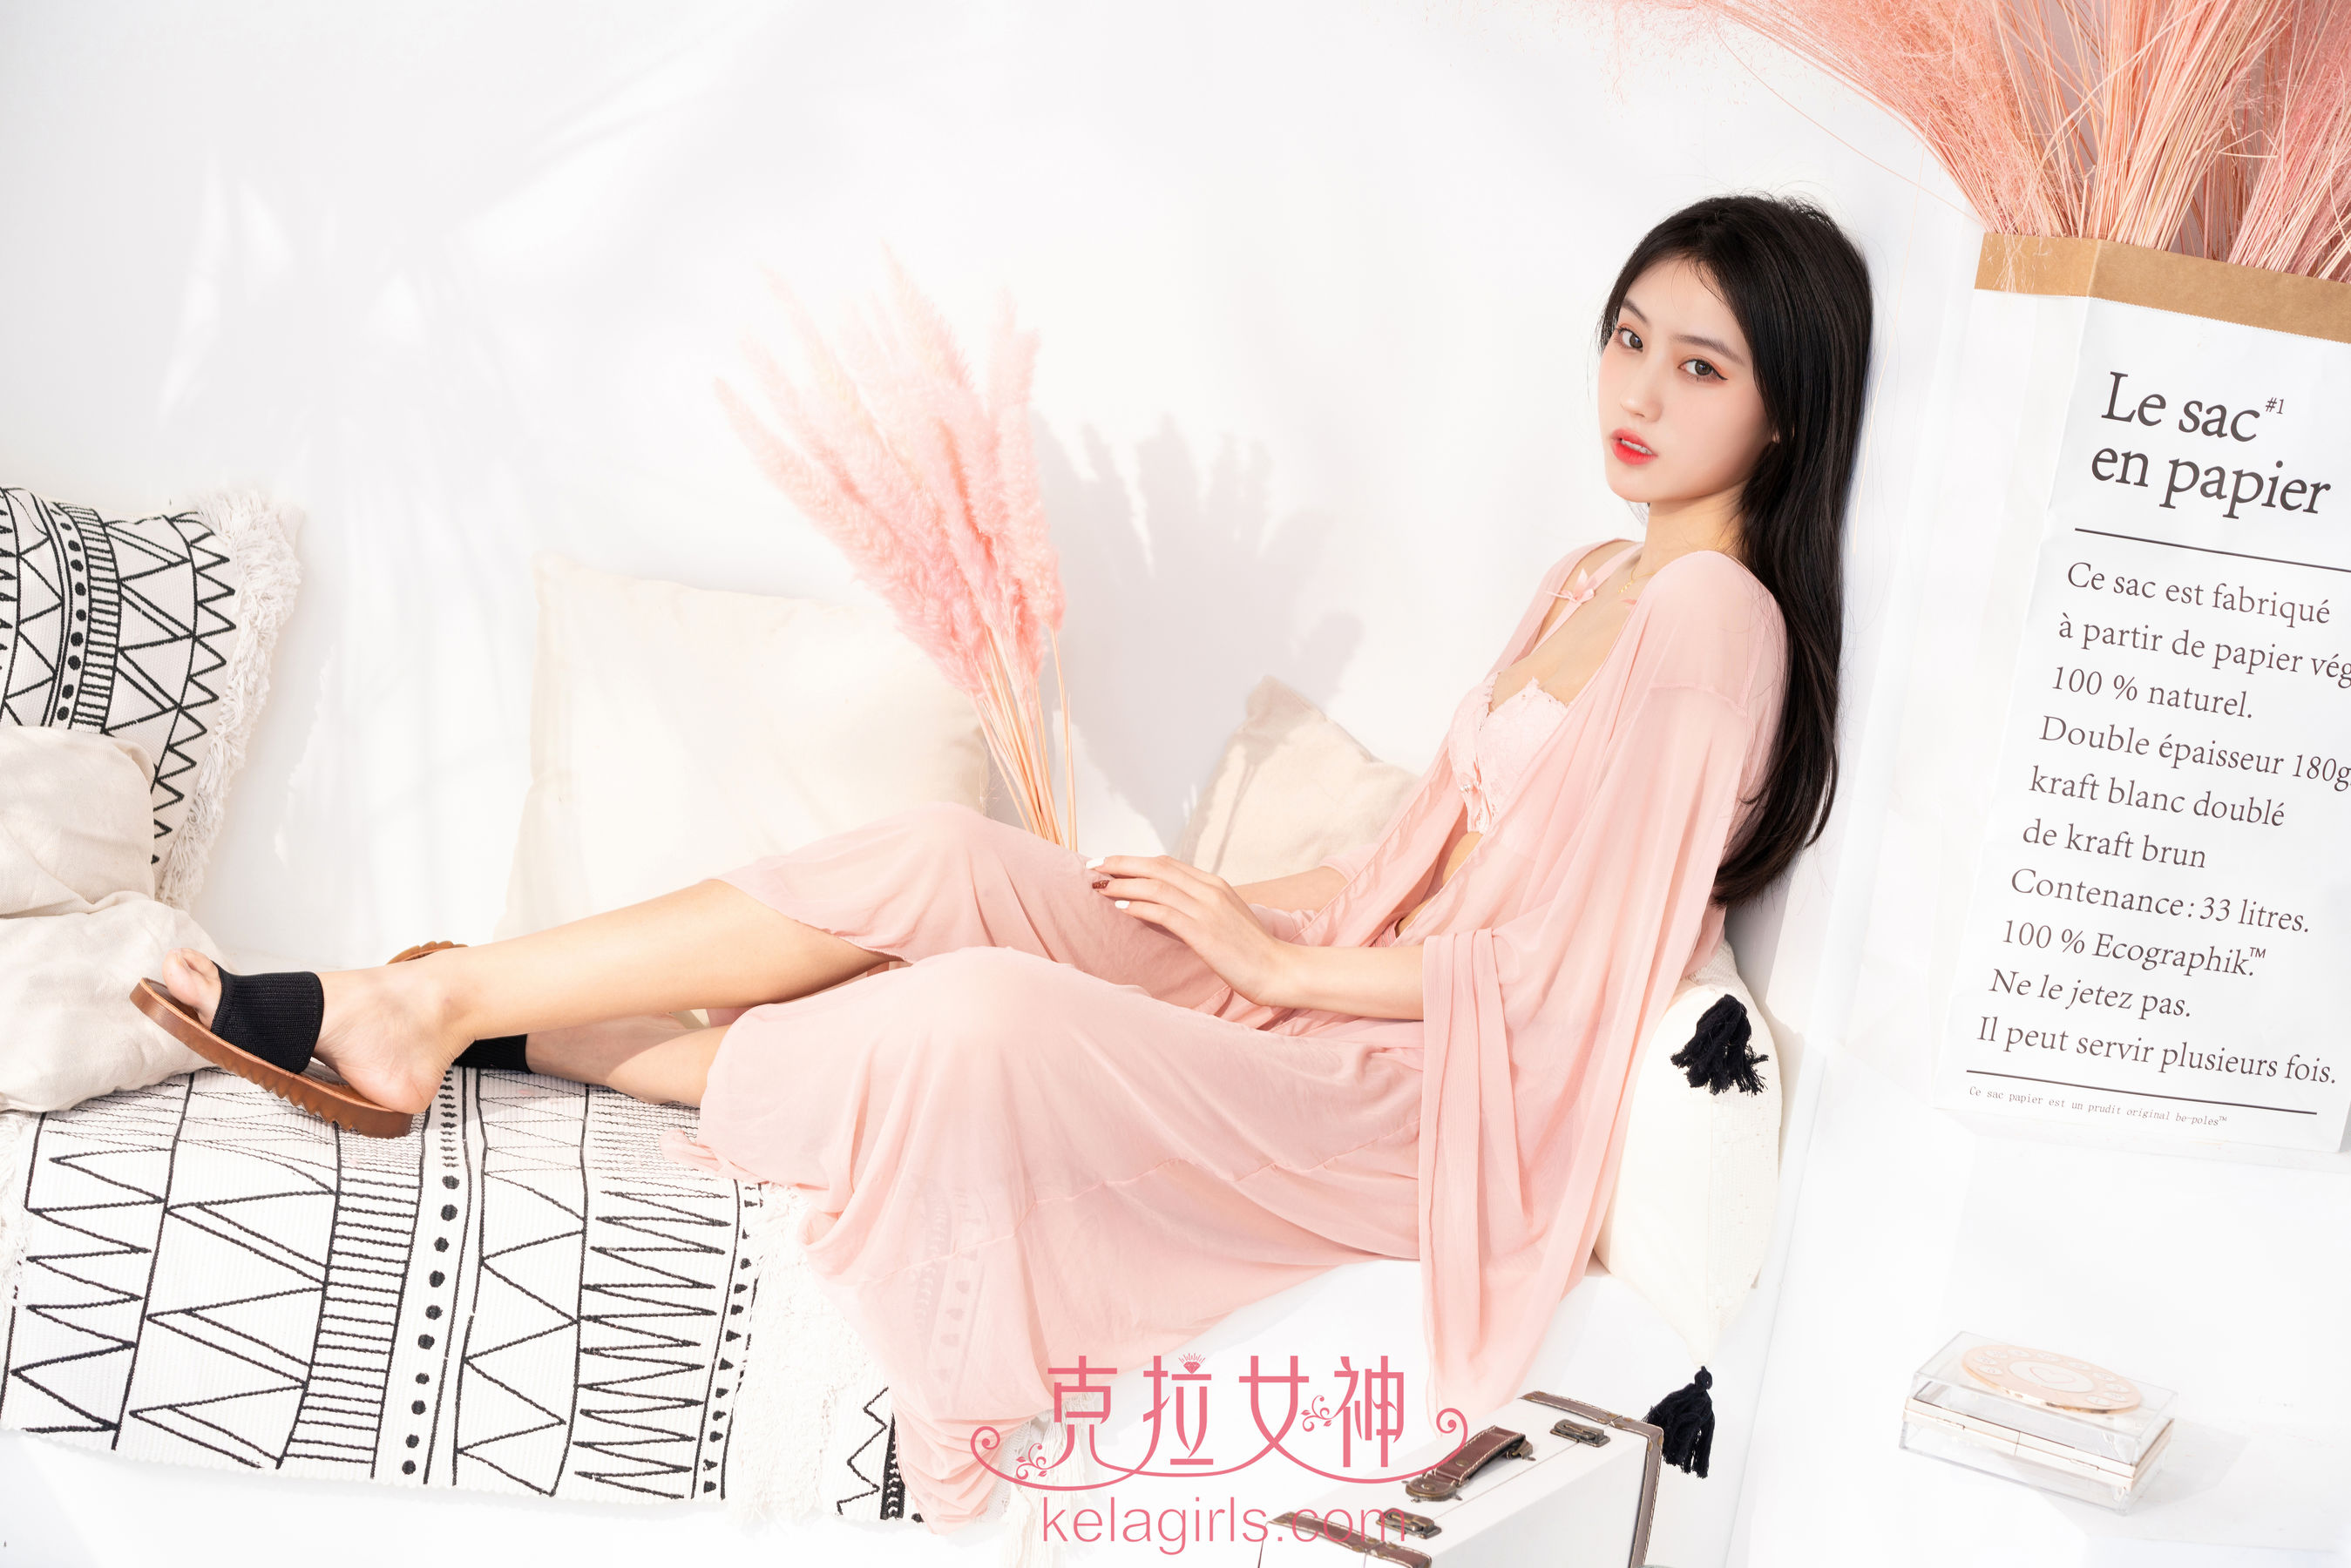 [Kelagirls] Mo Xi wears a pink gauze Page 2 No.b4596d